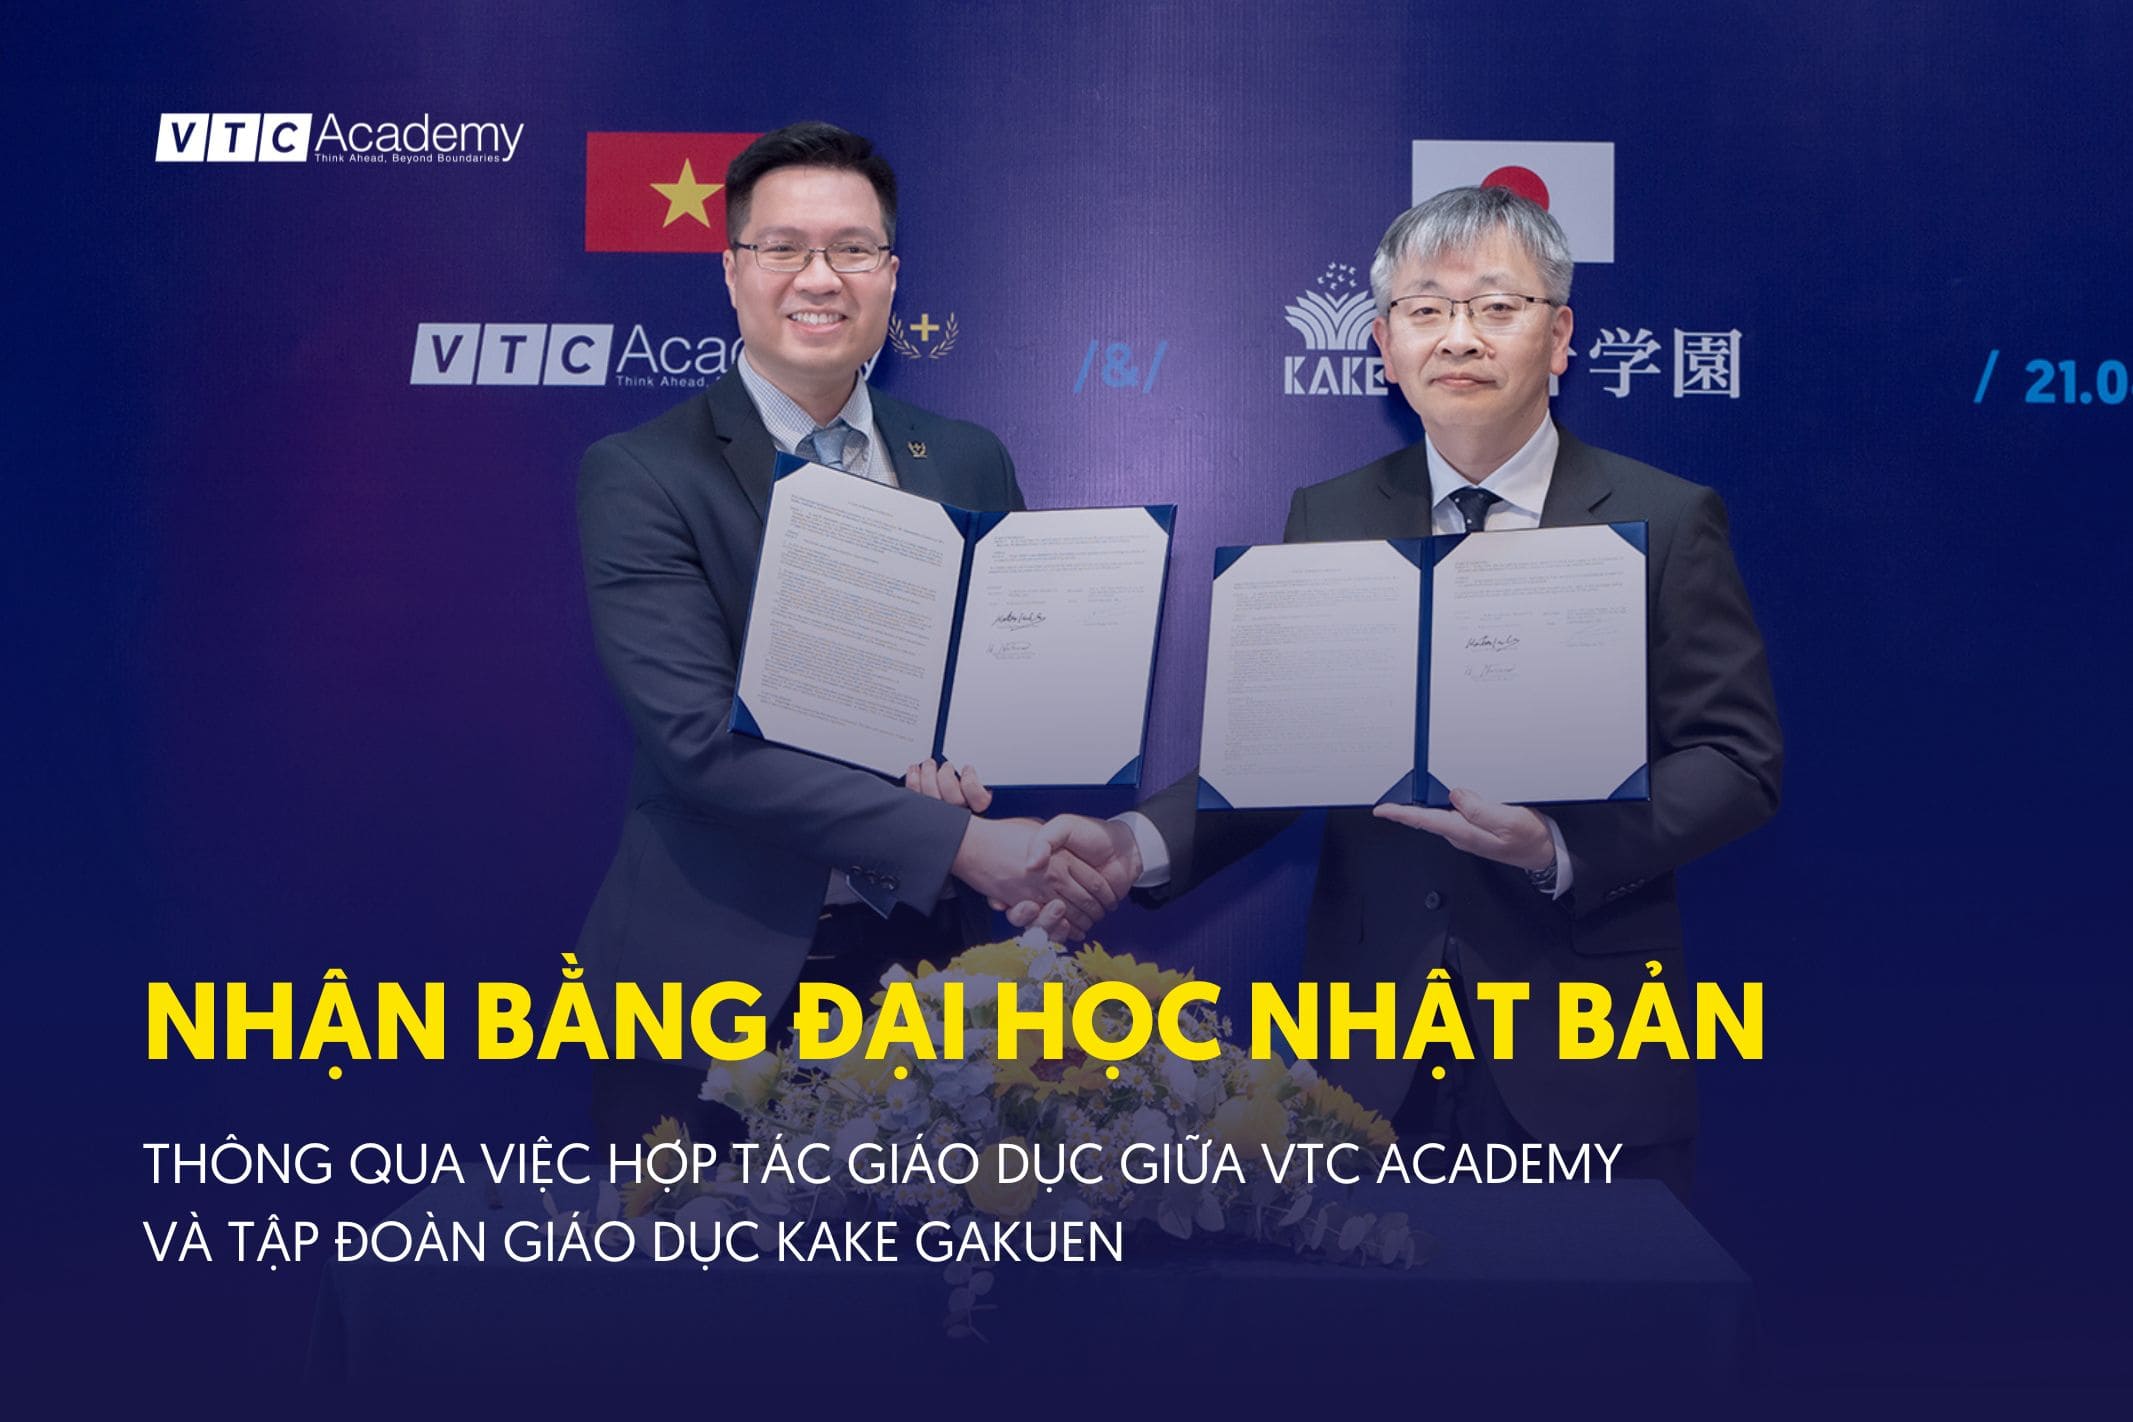 Cơ hội nhận bằng Đại học Nhật Bản, thông qua việc hợp tác giáo dục giữa VTC Academy và Tập đoàn giáo dục Kake